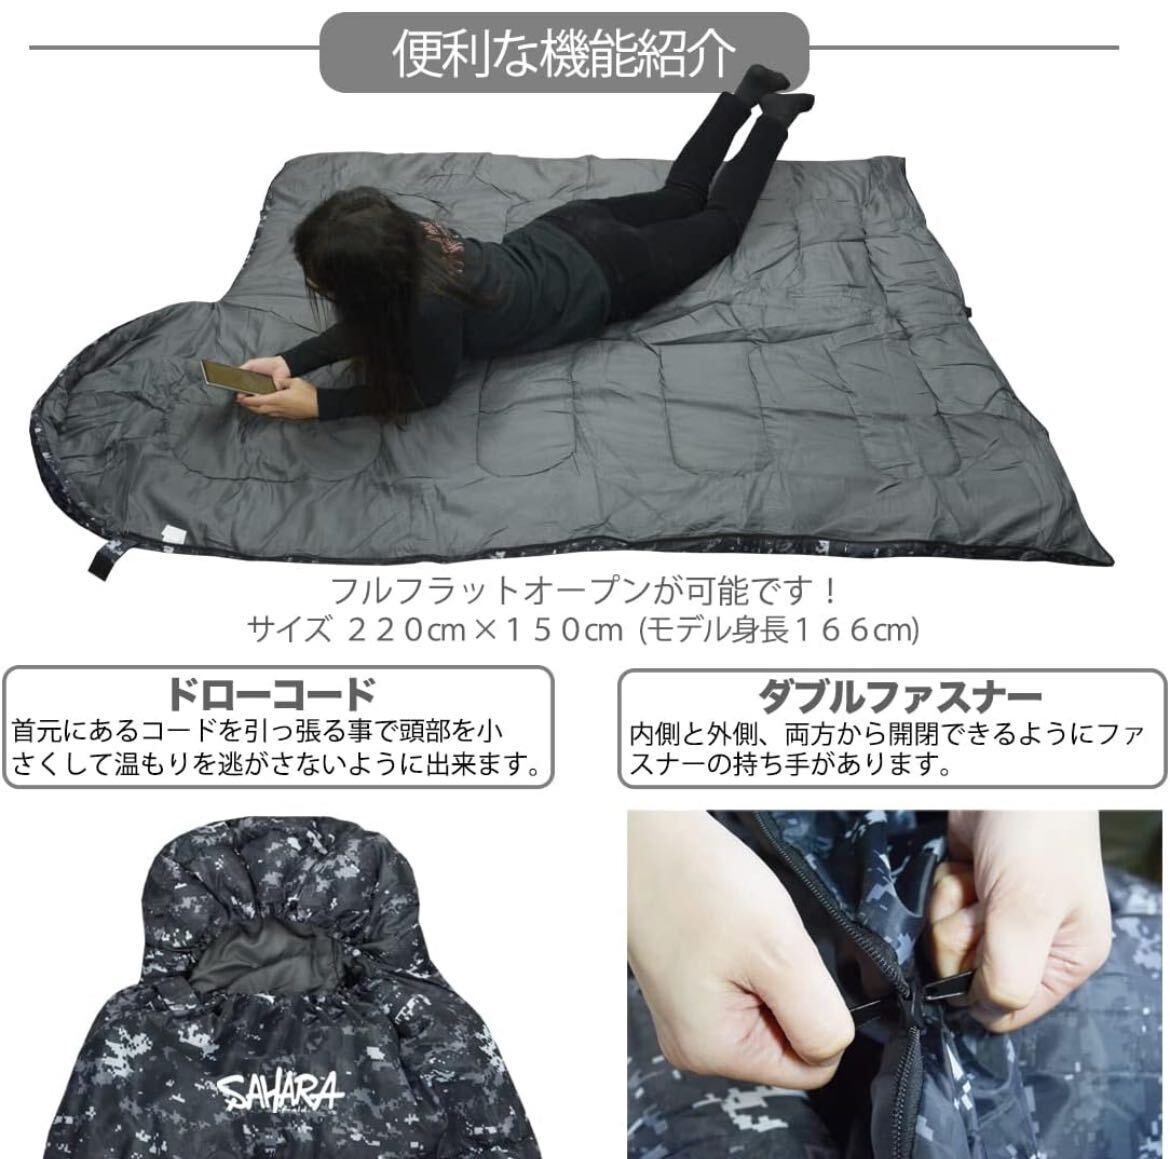 【fieldsahara】 寝袋 シュラフ 封筒型 デジタル迷彩 コンパクト 冬用 夏用 最低使用温度 -15℃デザート 4の画像3